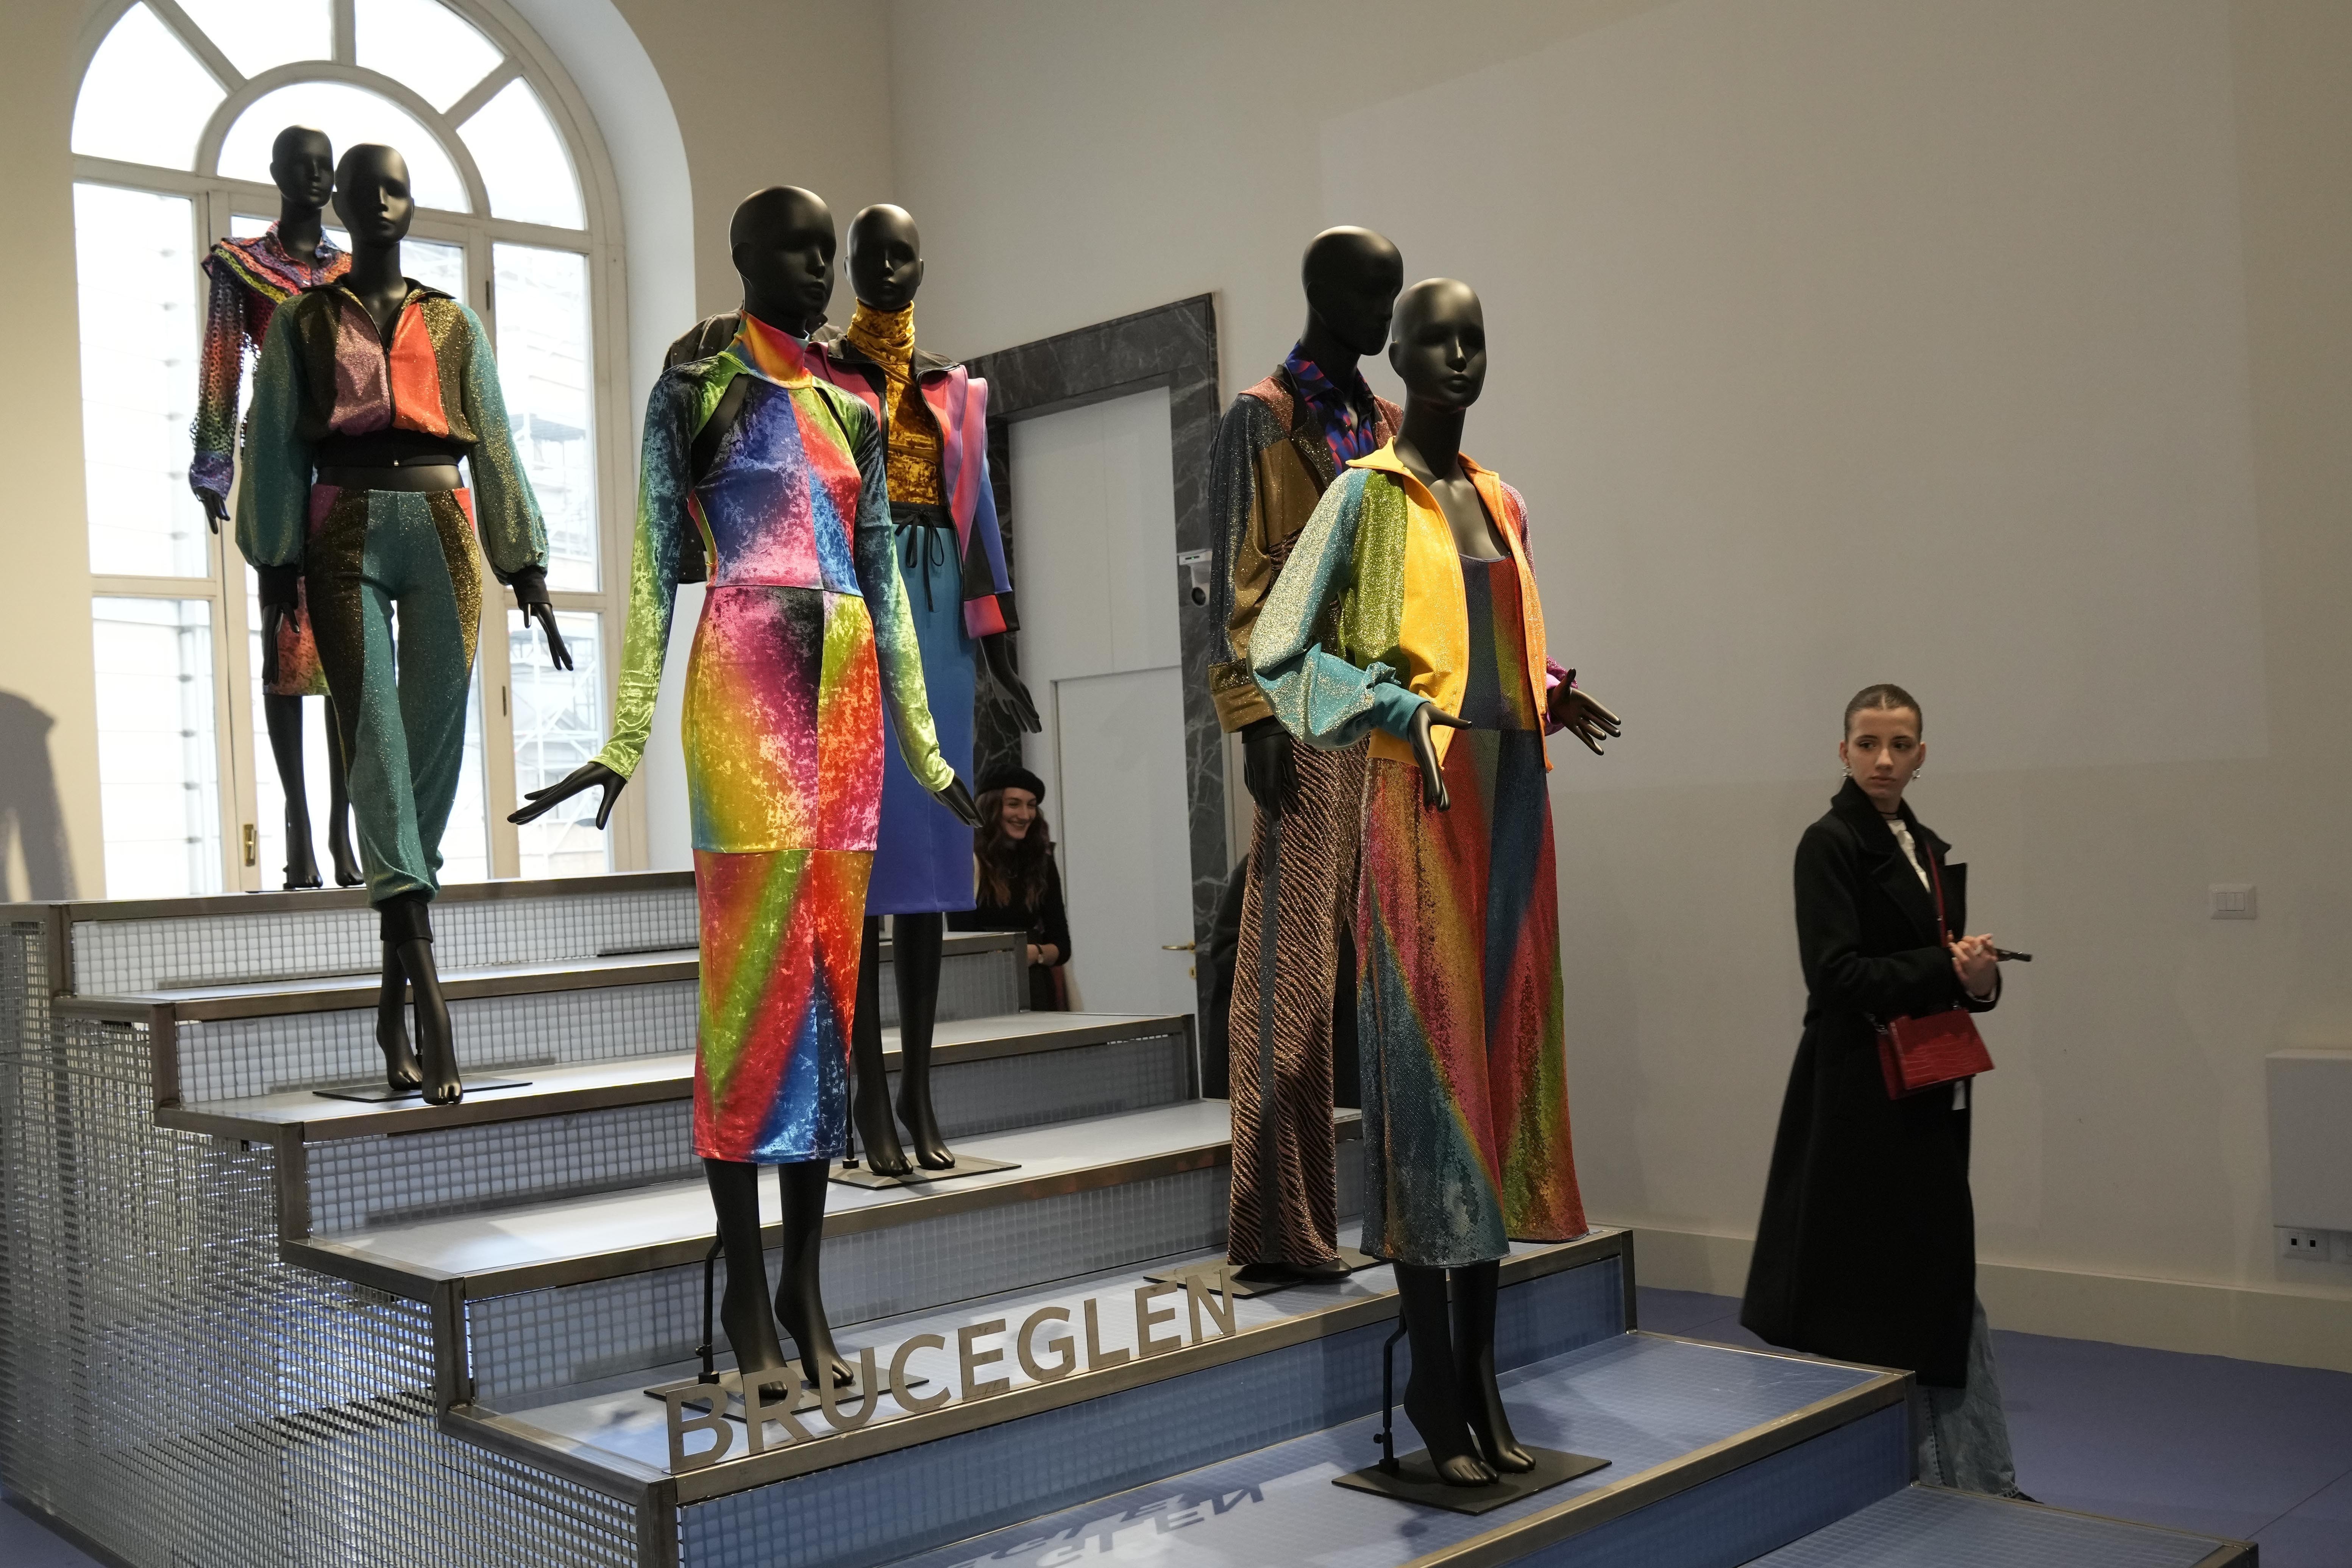 Italian Clothing Brands We Saw at Milan Fashion Week